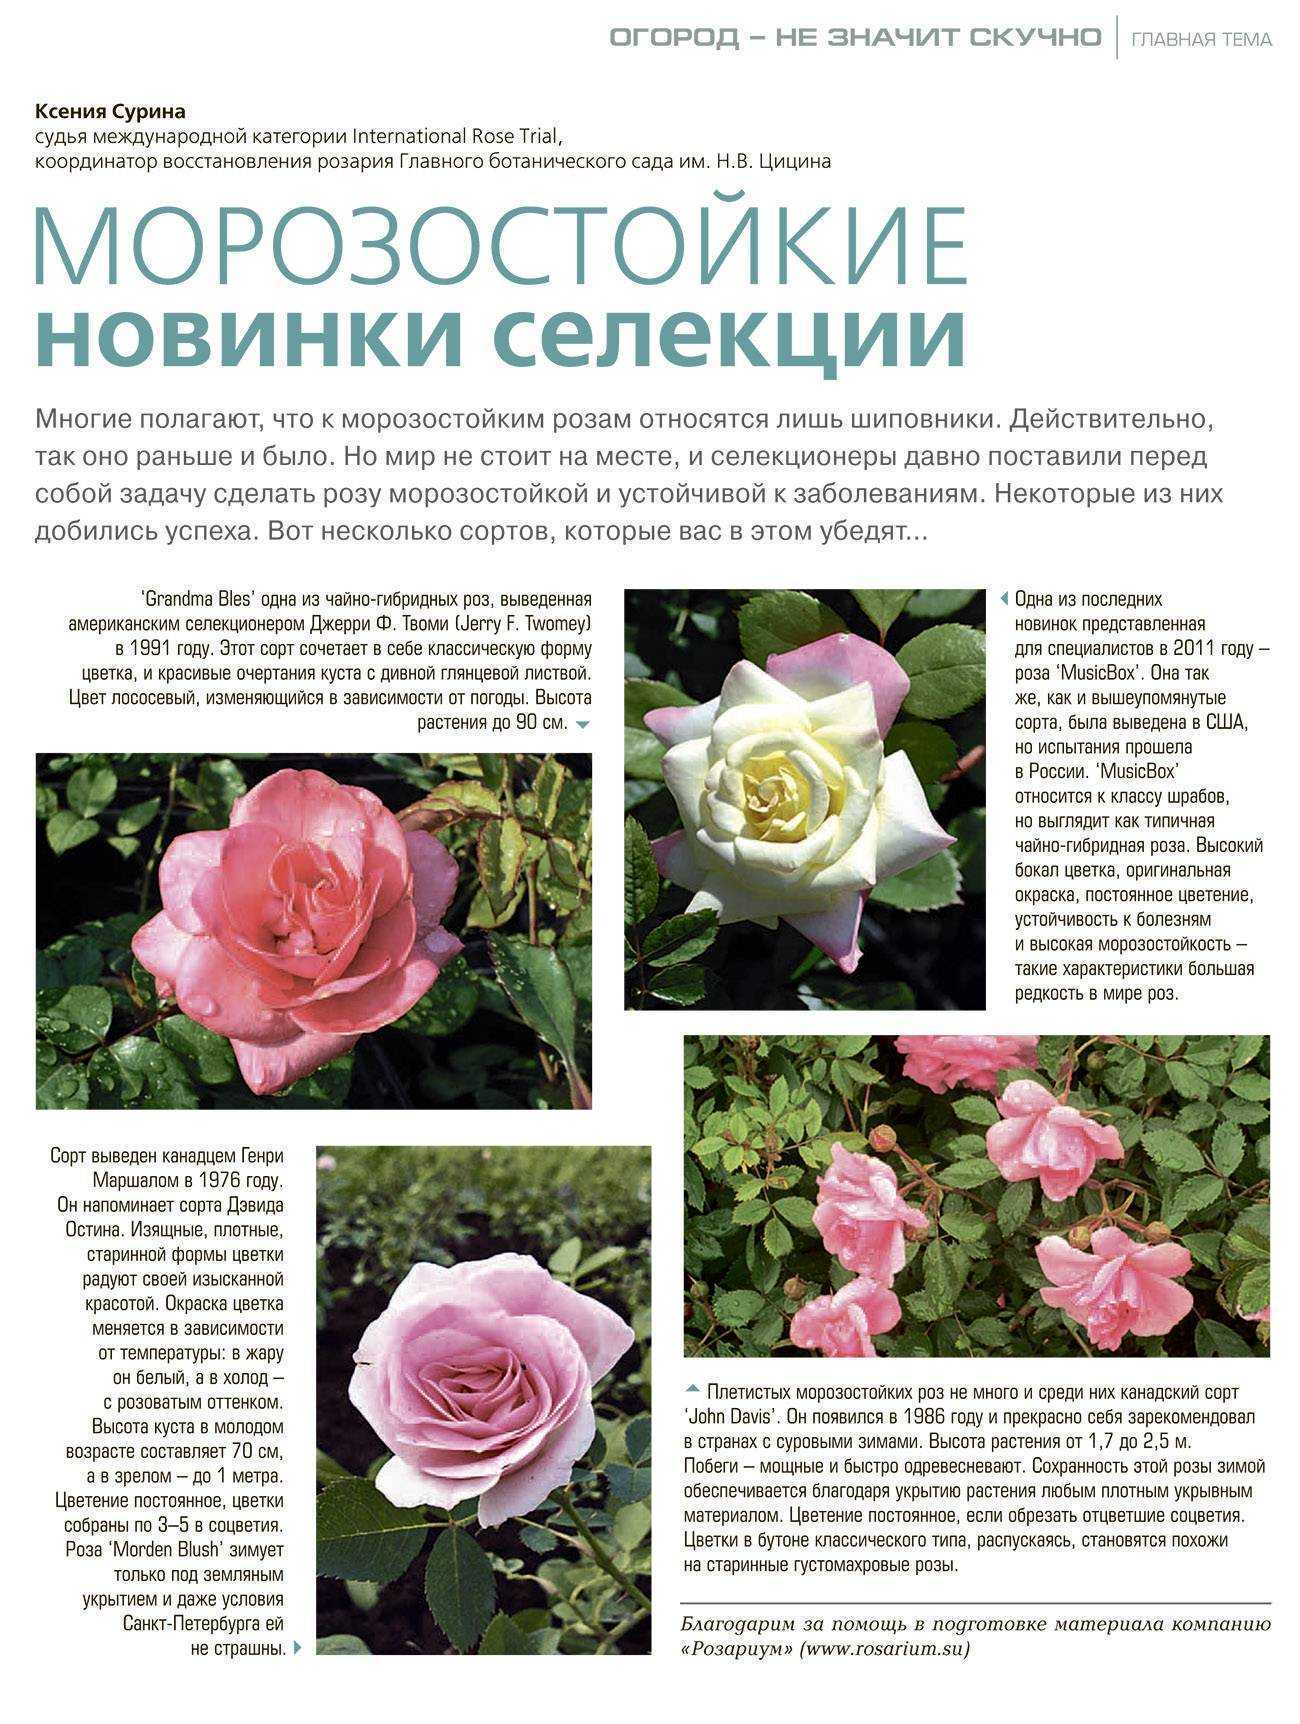 Роза блаш: описание и фото сорта blush rose, история возникновения, цветение и использование в ландшафтном дизайне, уход и размножение, болезни и вредители